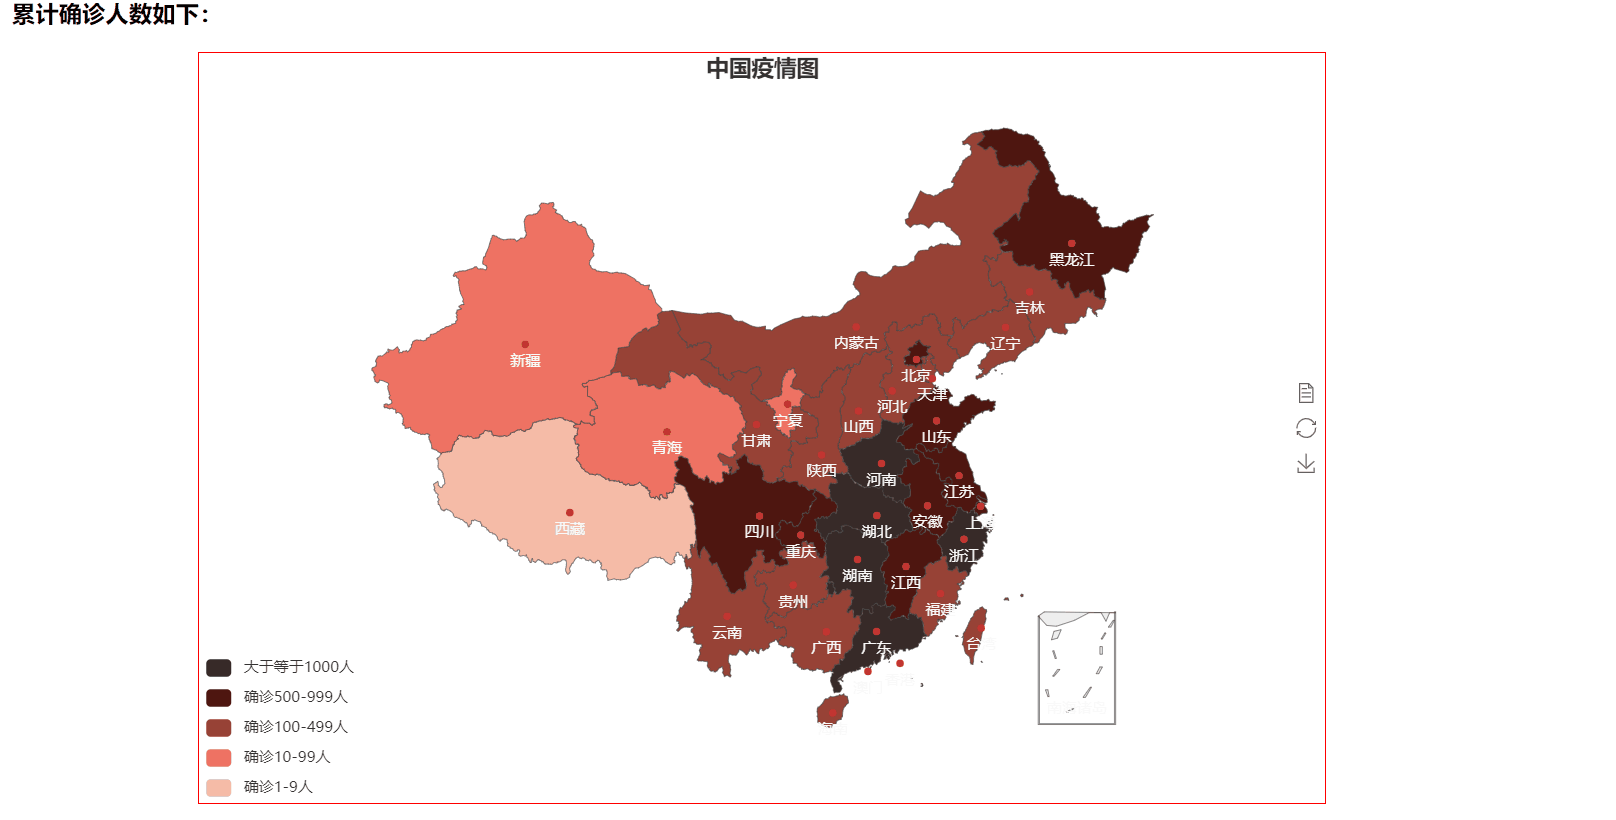 百度开源Echarts实现中国疫情地图(ps:已对接腾讯新闻接口数据实时更新)-米科极客